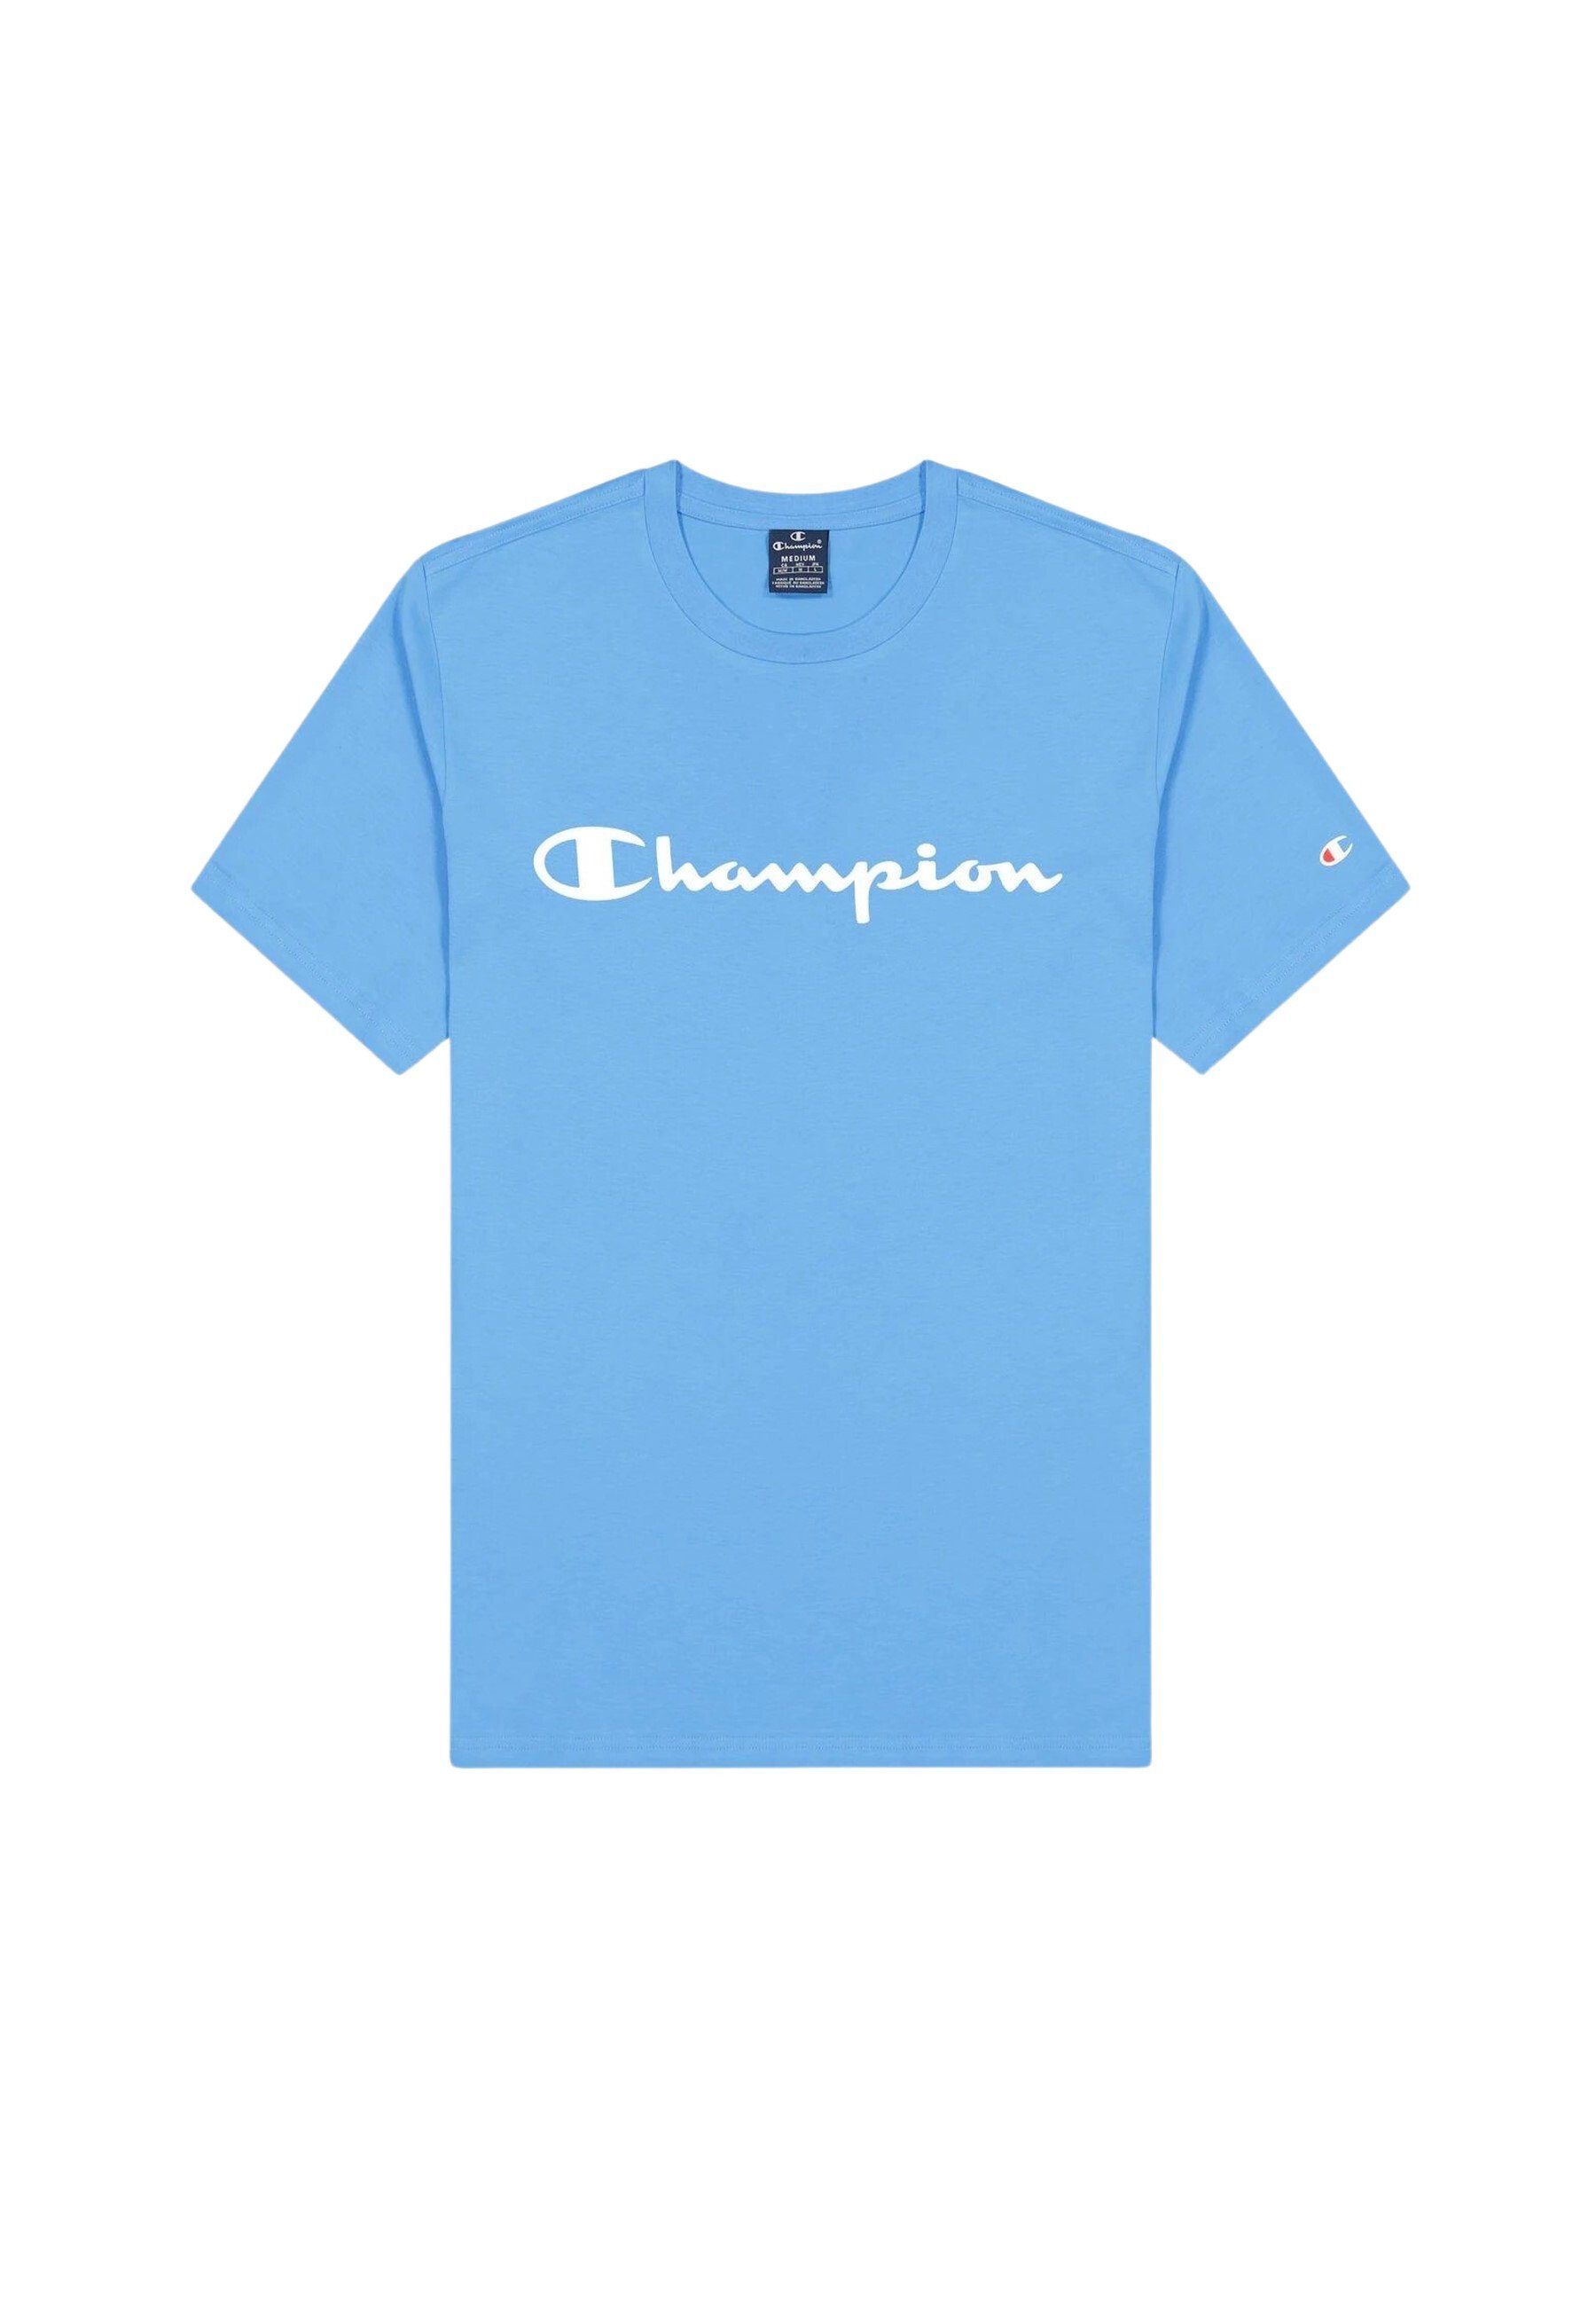 Champion T-Shirt Shirt Rundhals-T-Shirt aus Baumwolle mit hellblau